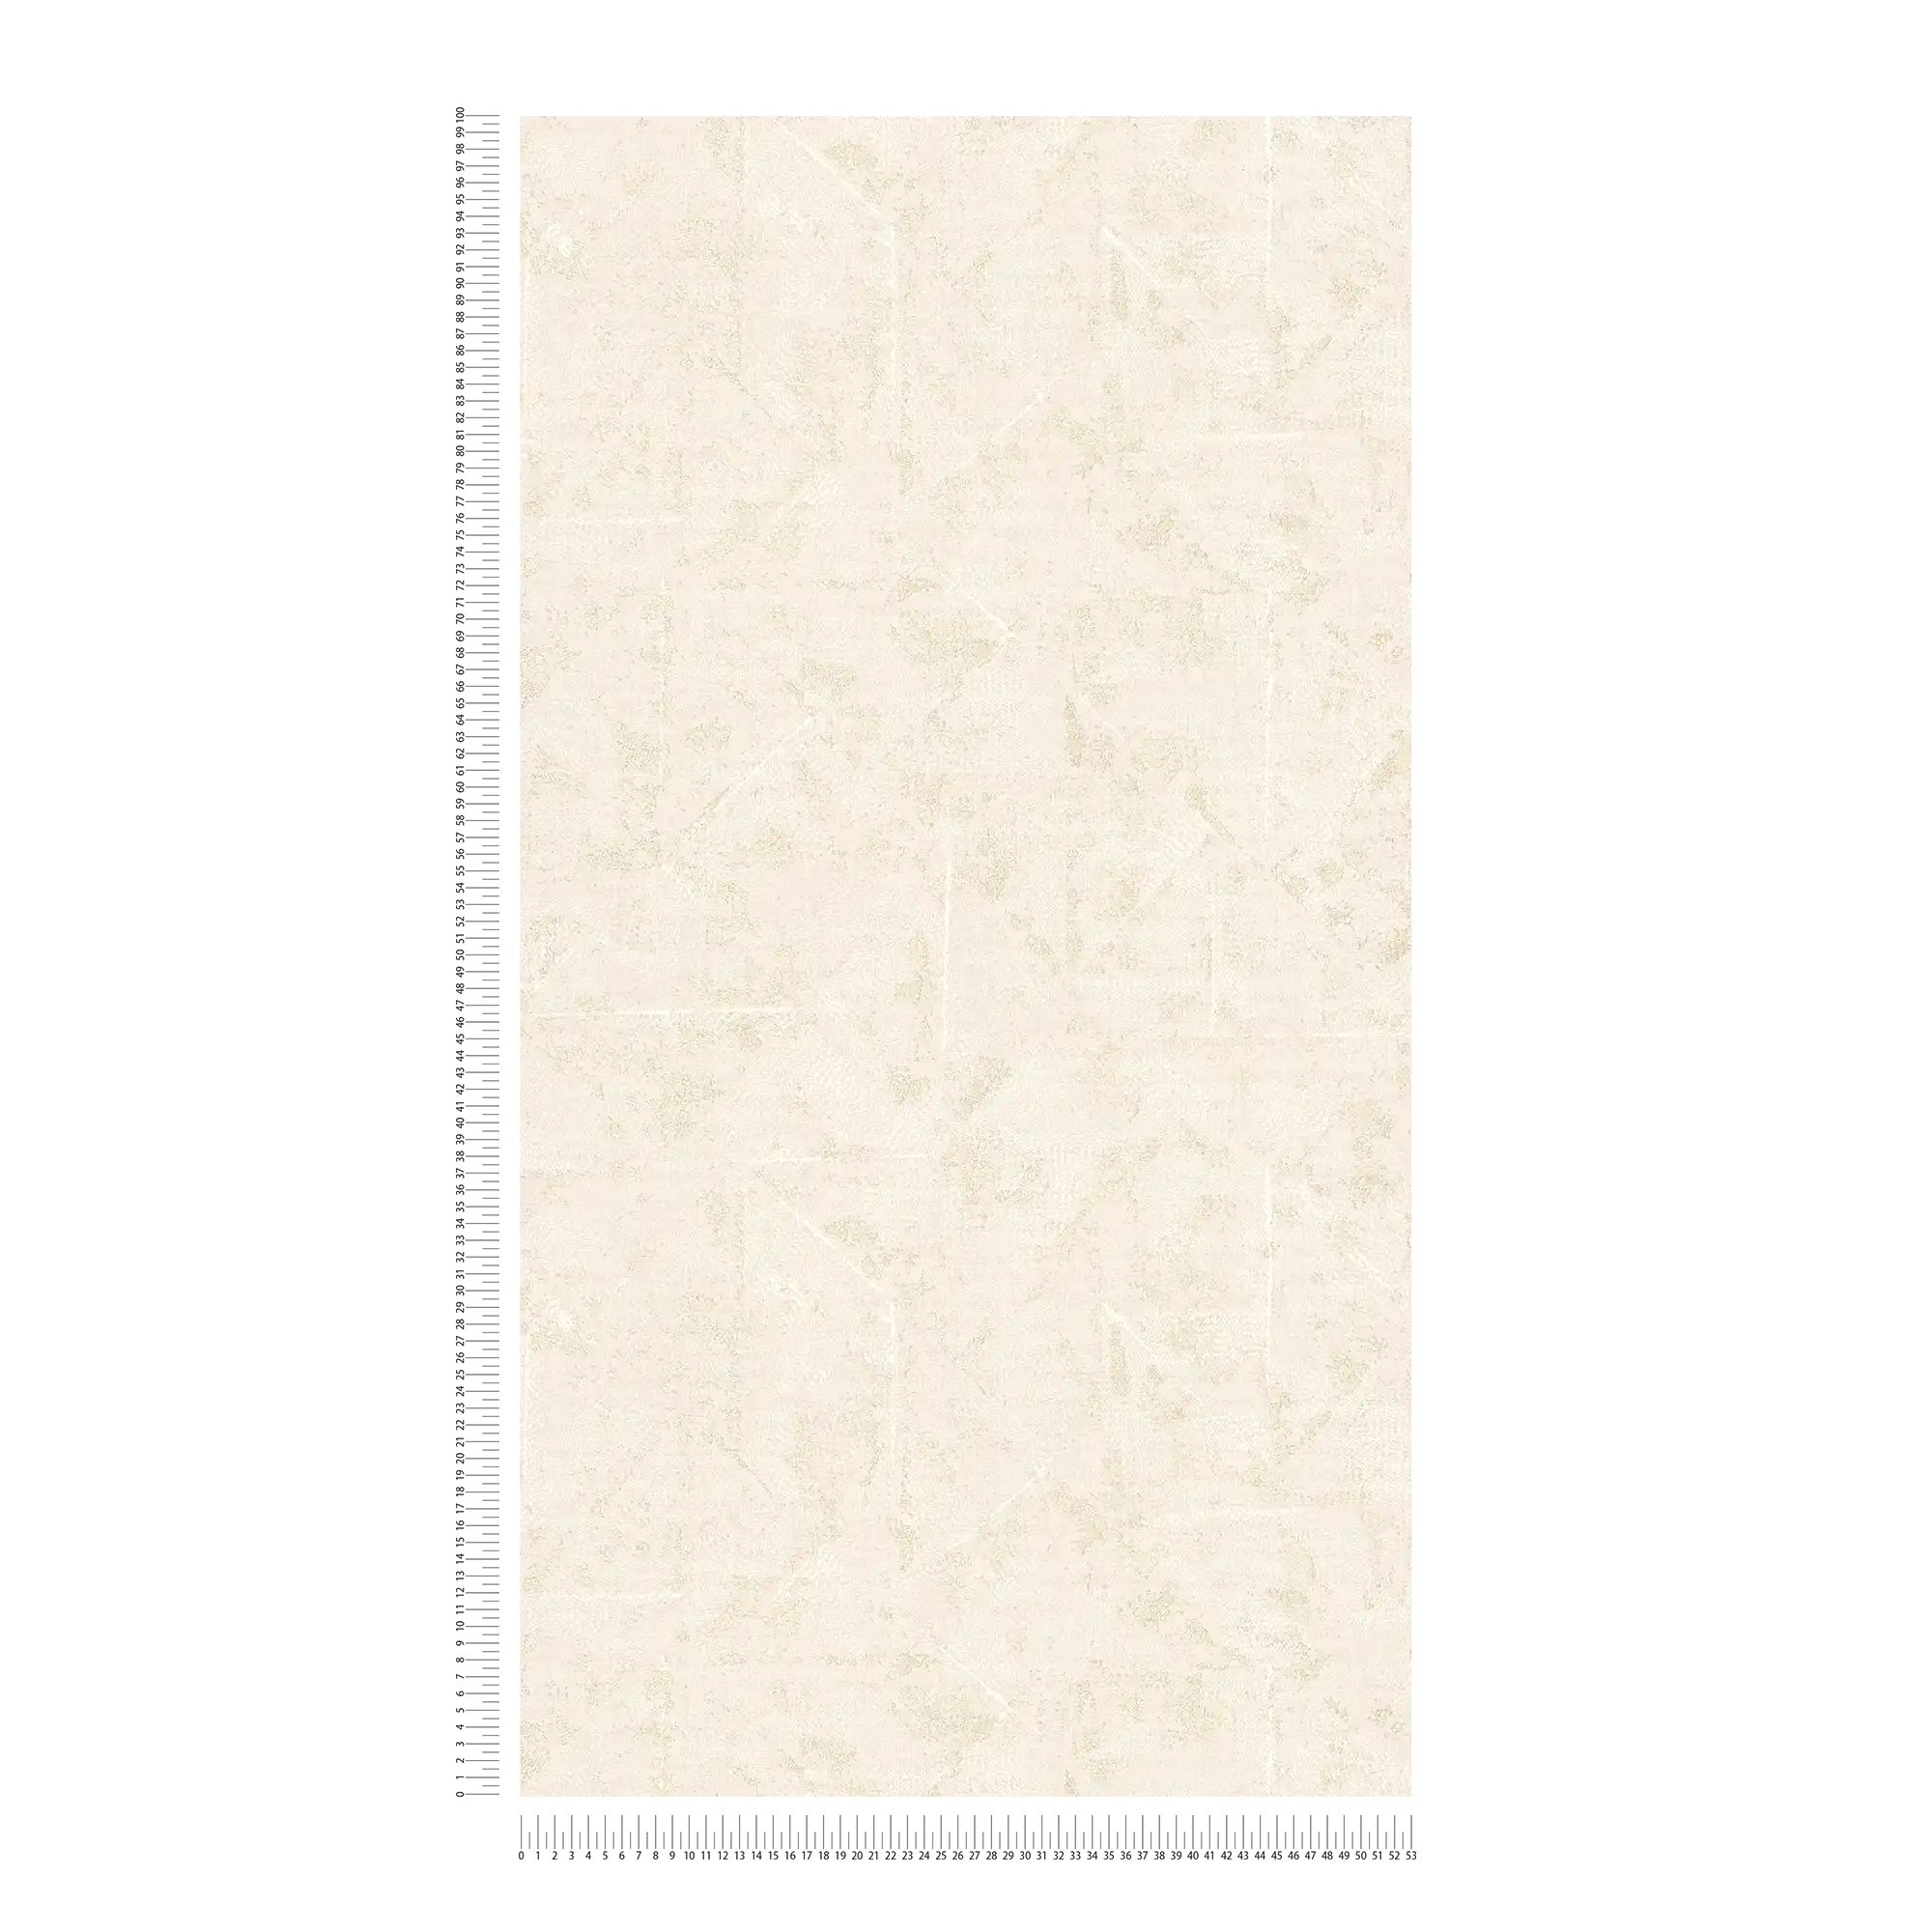             Tapete asymmetrisch gemustert, Used Look – Creme, Weiß, Gold
        